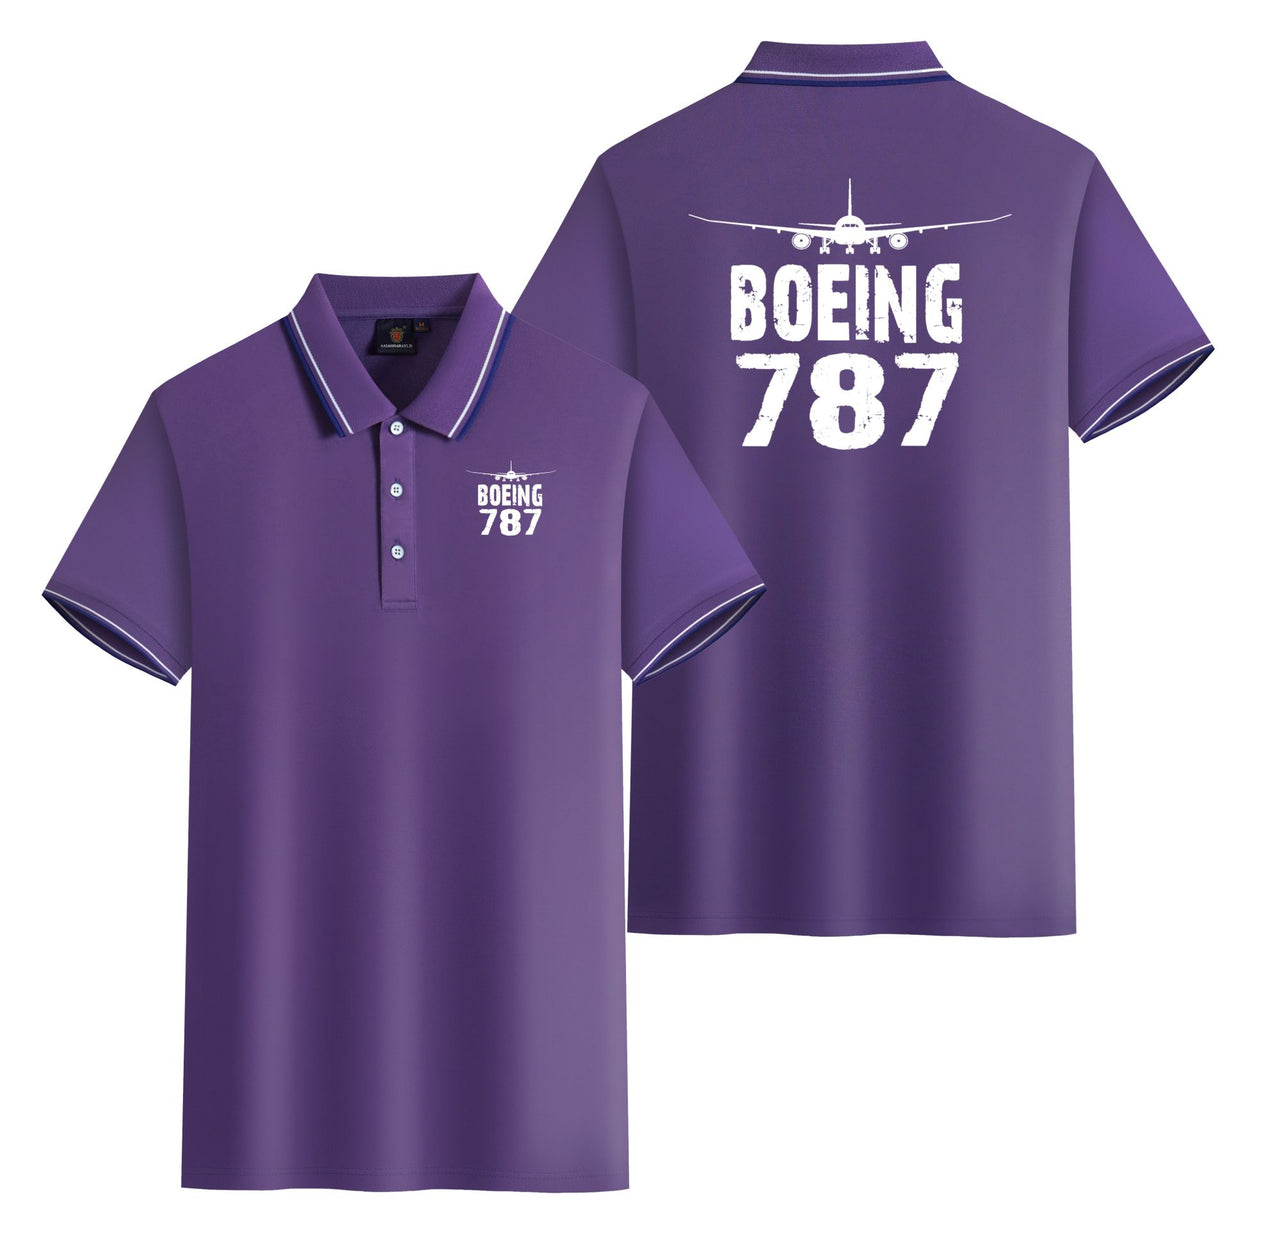 Boeing 787 & Plane Designed Stylish Polo T-Shirts (Double-Side)